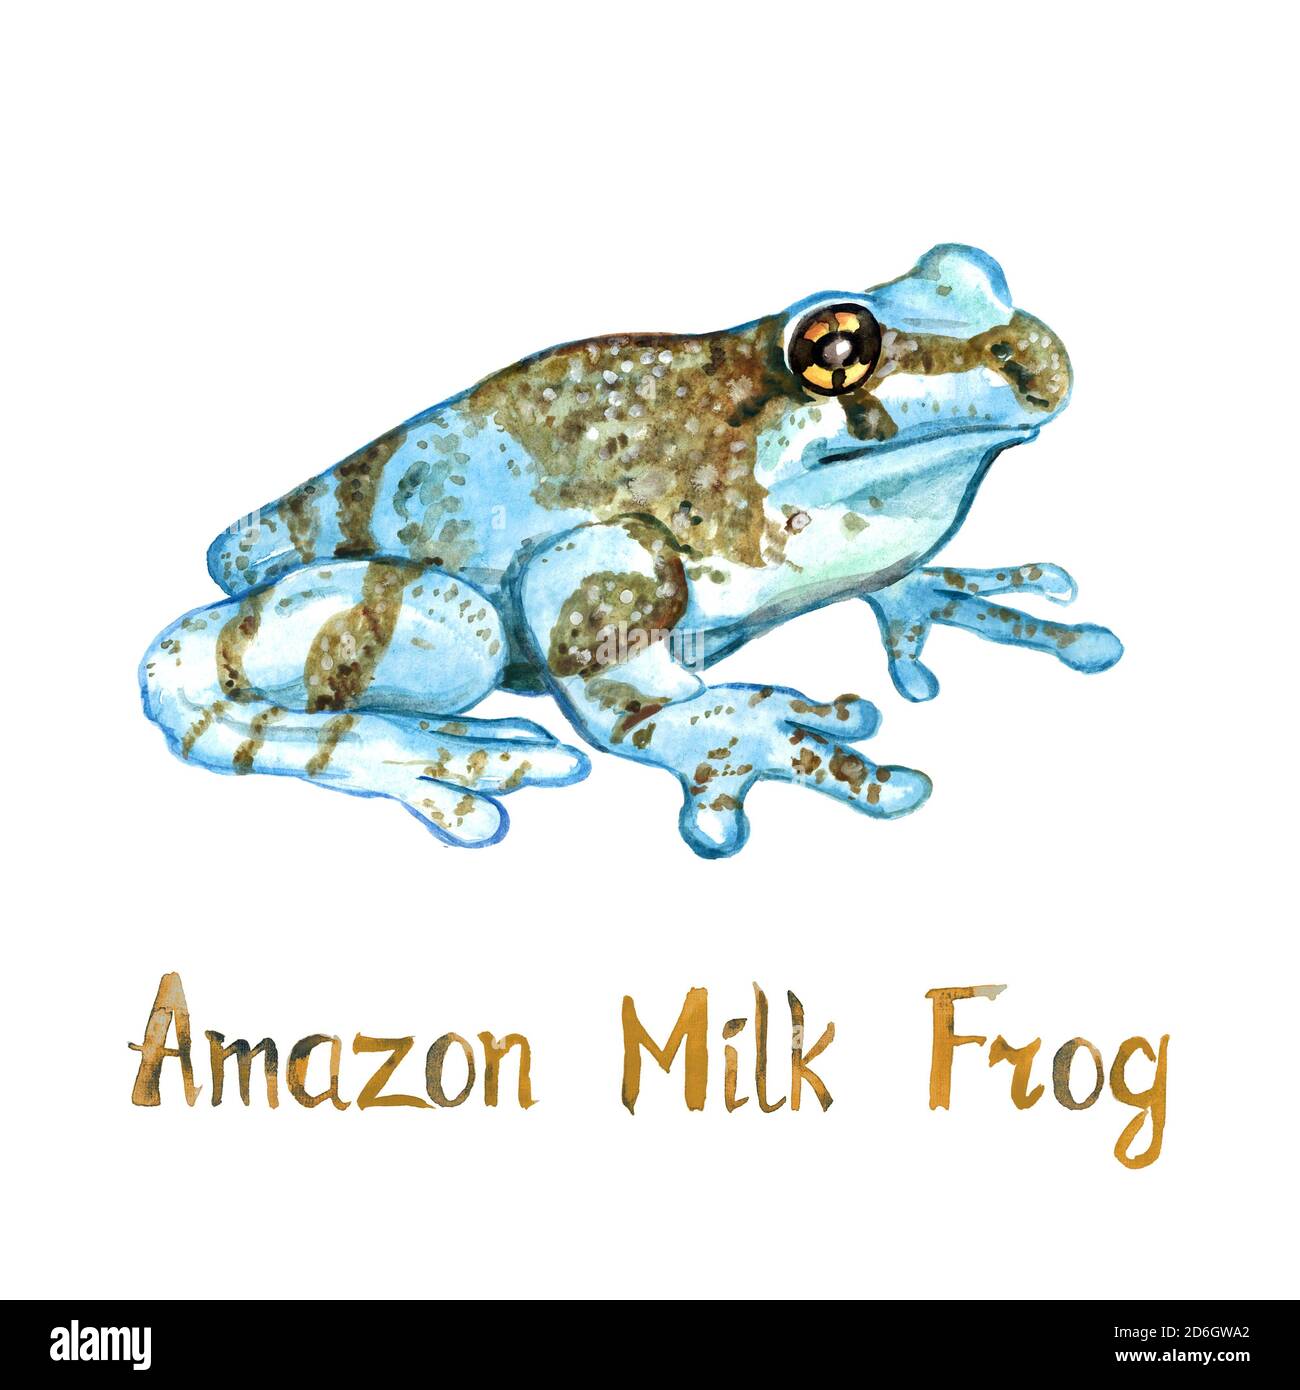 La grenouille d'arbre à yeux dorés de Mission, la grenouille du lait amazonien (Trachycephalus resinifitrix) a isolé sur une illustration d'aquarelle peinte à la main blanche Banque D'Images